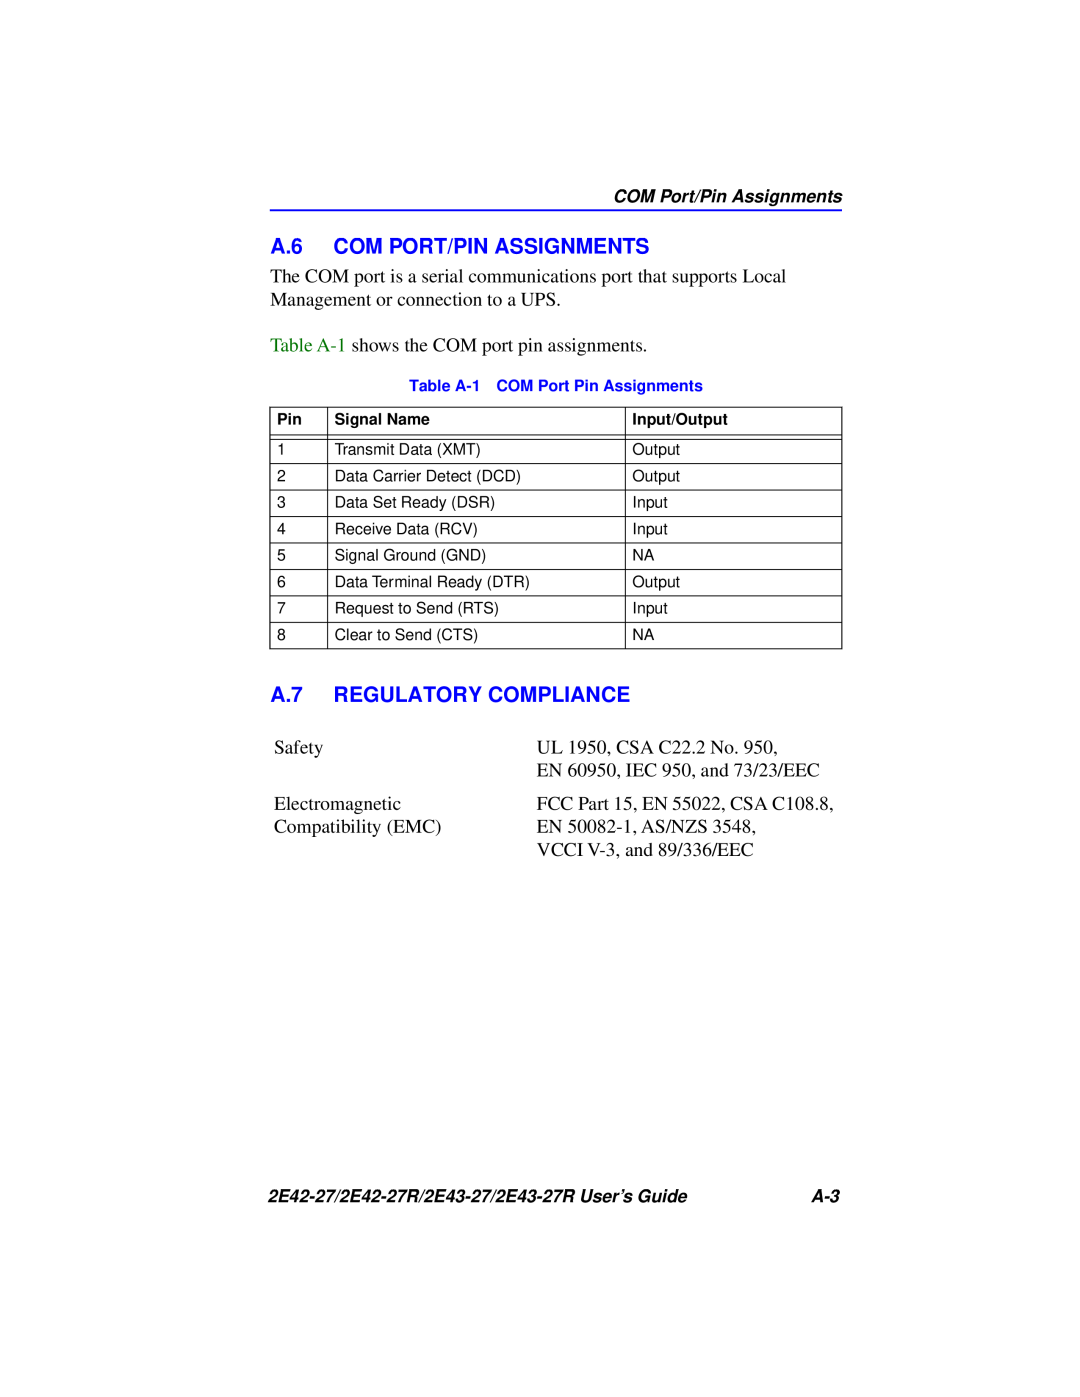 Cabletron Systems 2E42-27R, 2E43-27R manual A.6 COM PORT/PIN ASSIGNMENTS, A.7 REGULATORY COMPLIANCE 